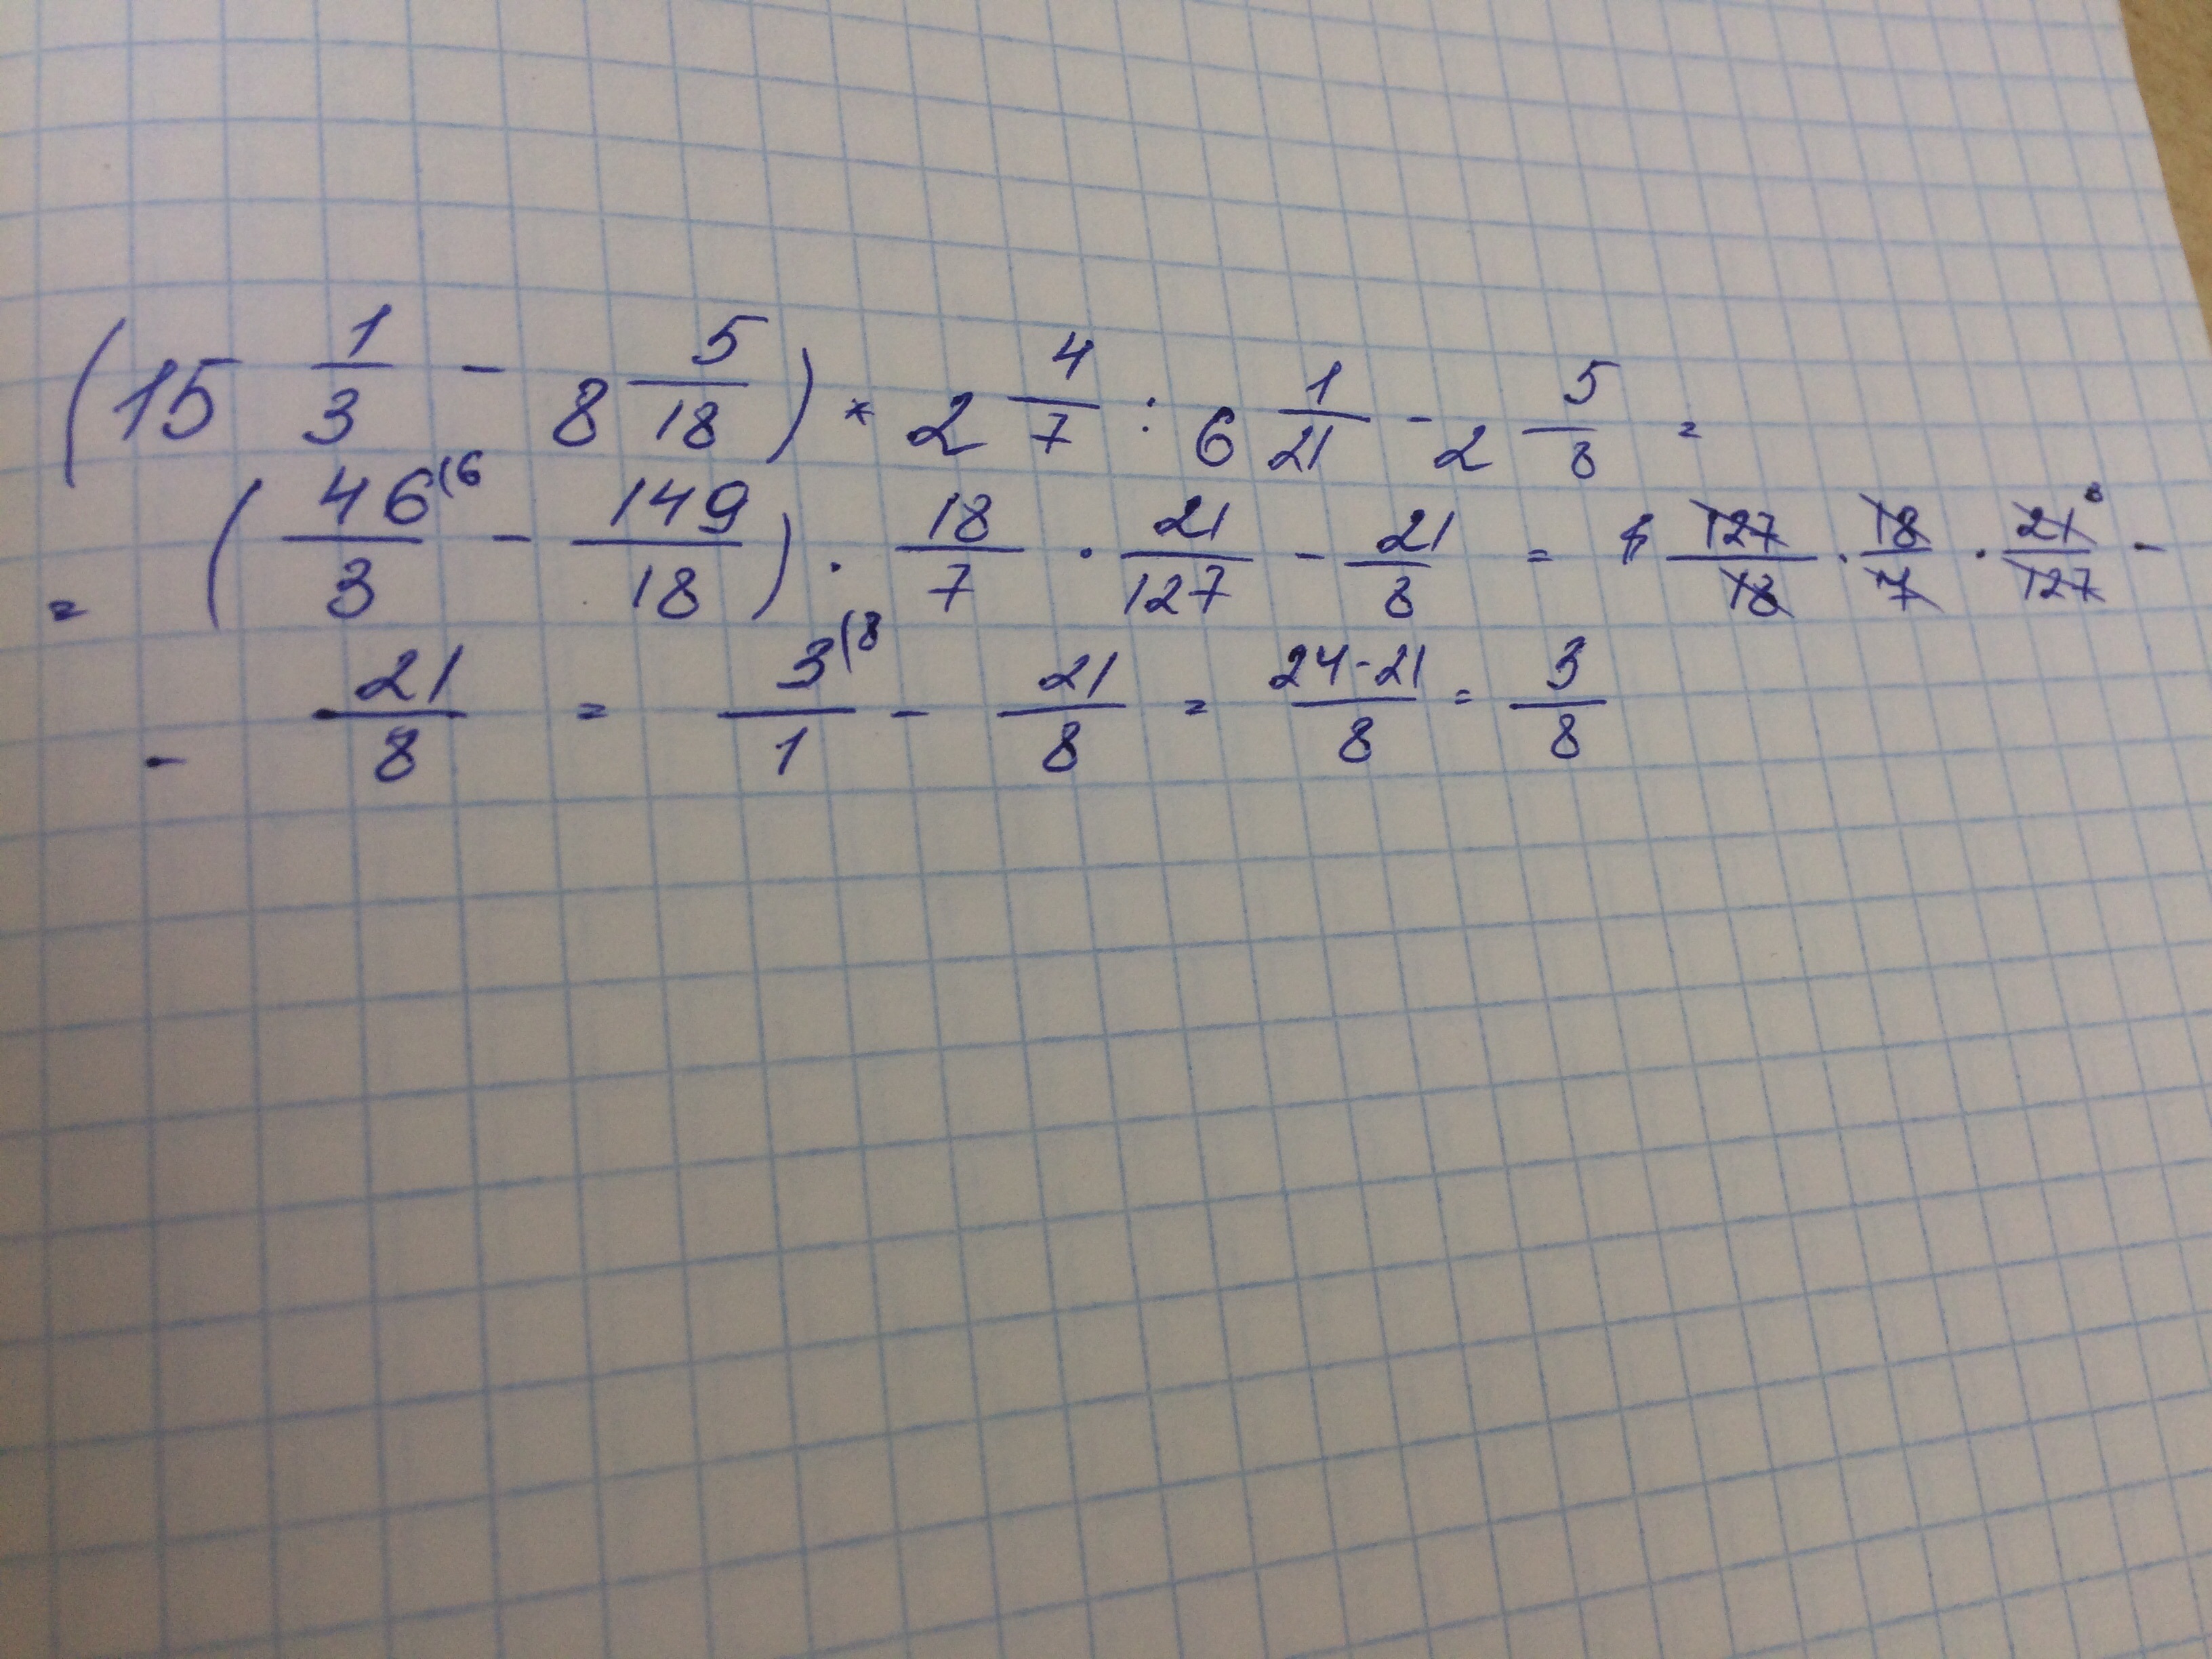 7 15 7 12 1 05. Решить пример 15 целых 1/2. Реши пример :(2 целых1/6 -3 целых1/4): 2 целых 3/5 + 2/3 • 2 целых 1/4 - 5 целых 1/6. 2целых7. Реши пример 9 разделить на 2 целых 2/5.